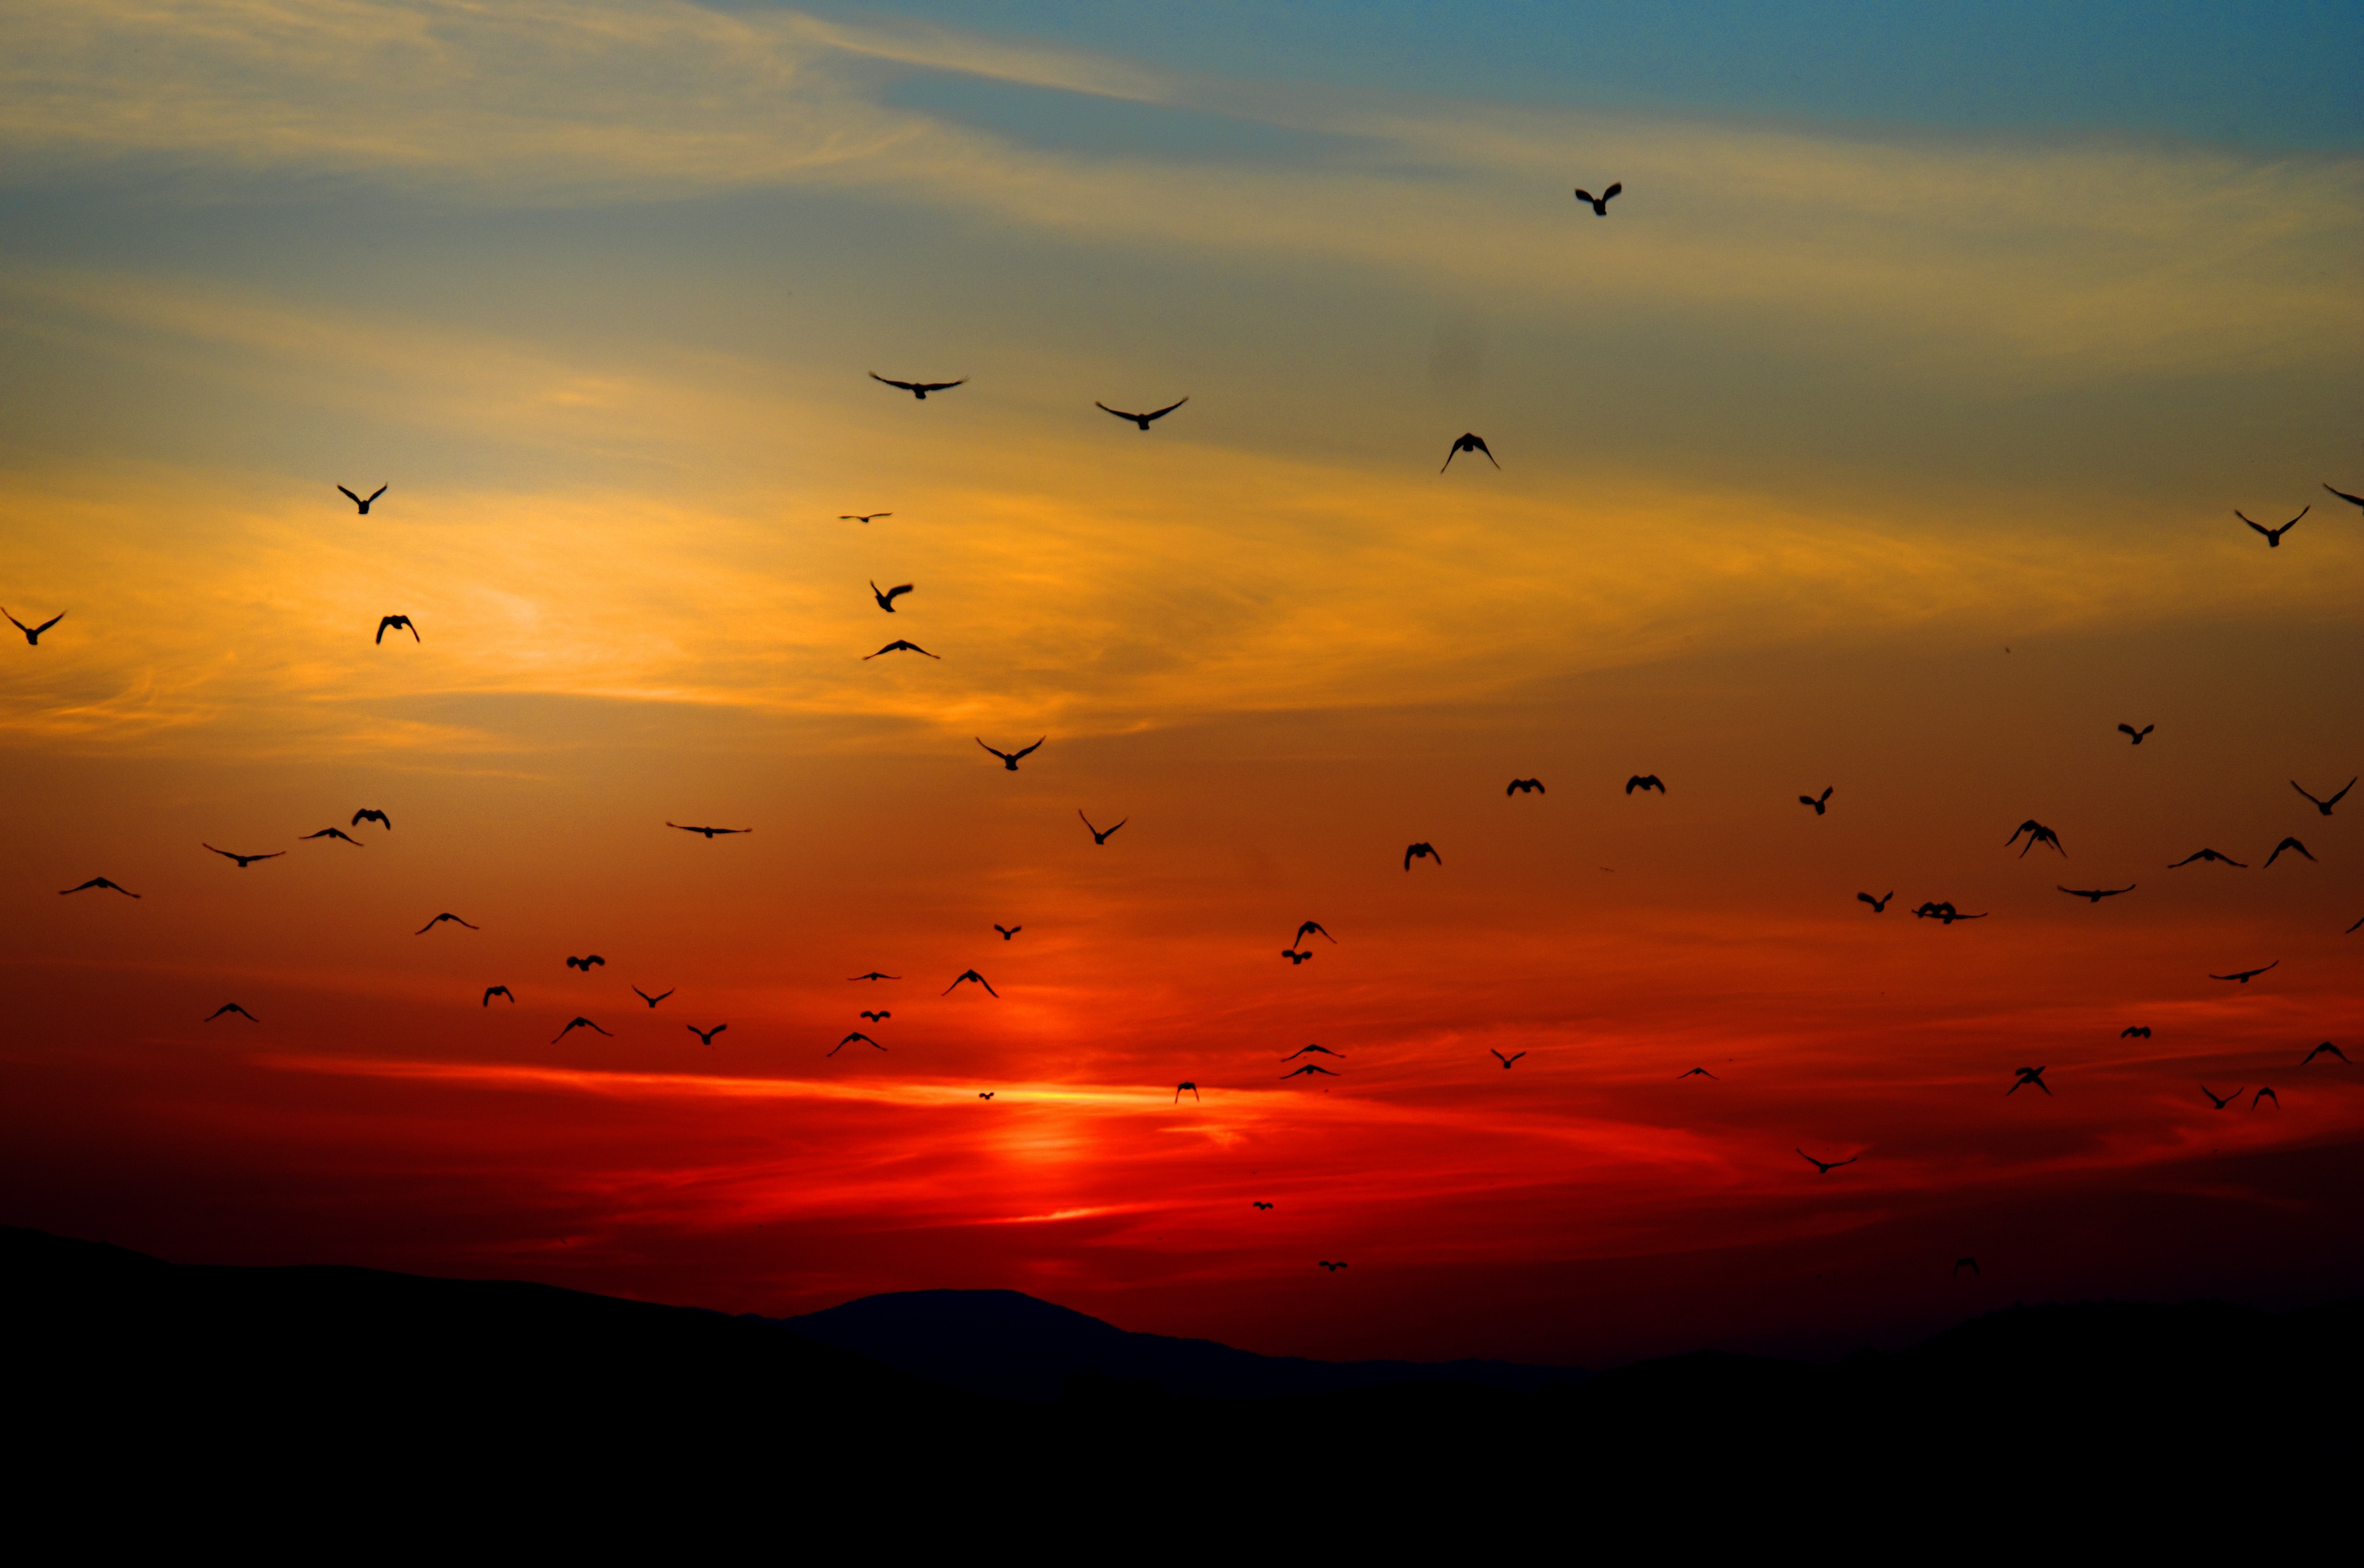 Sunset birds photo